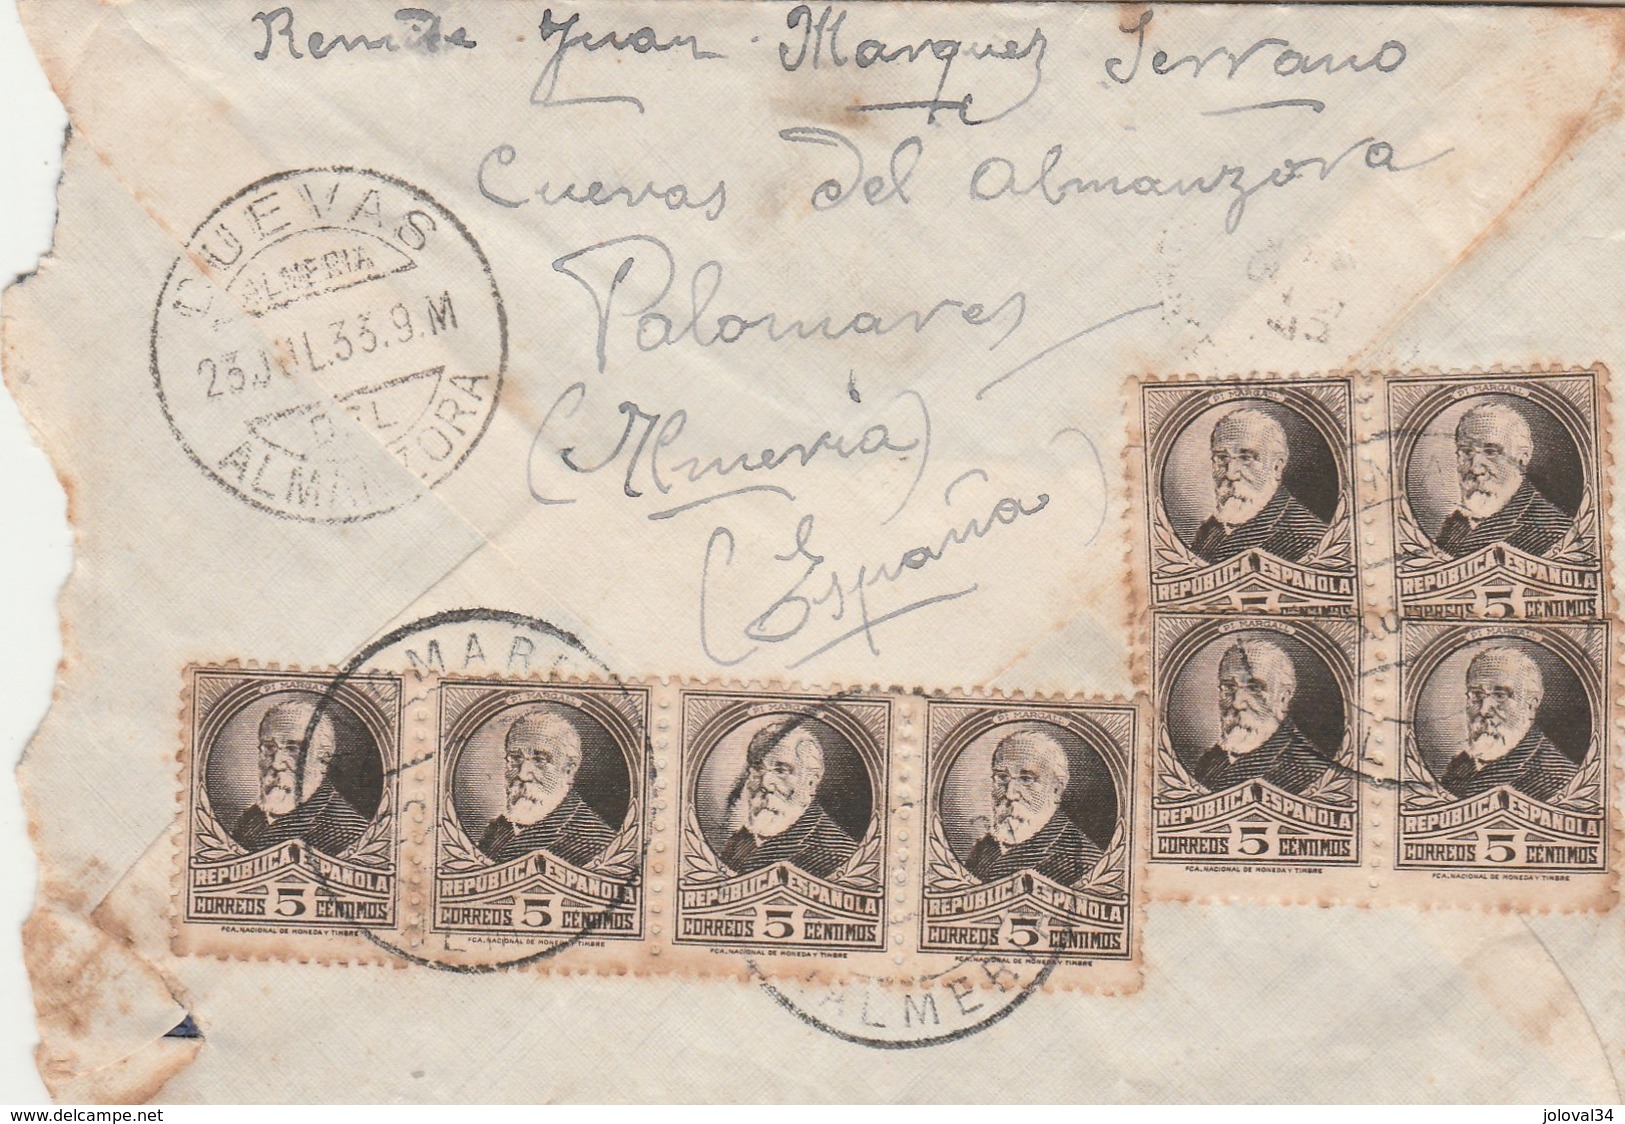 Espagne Lettre Cuevas Almanzora 23/7/1933 Pour St Caprais Castelnau Estrefonds Haute Garonne France - Lettres & Documents